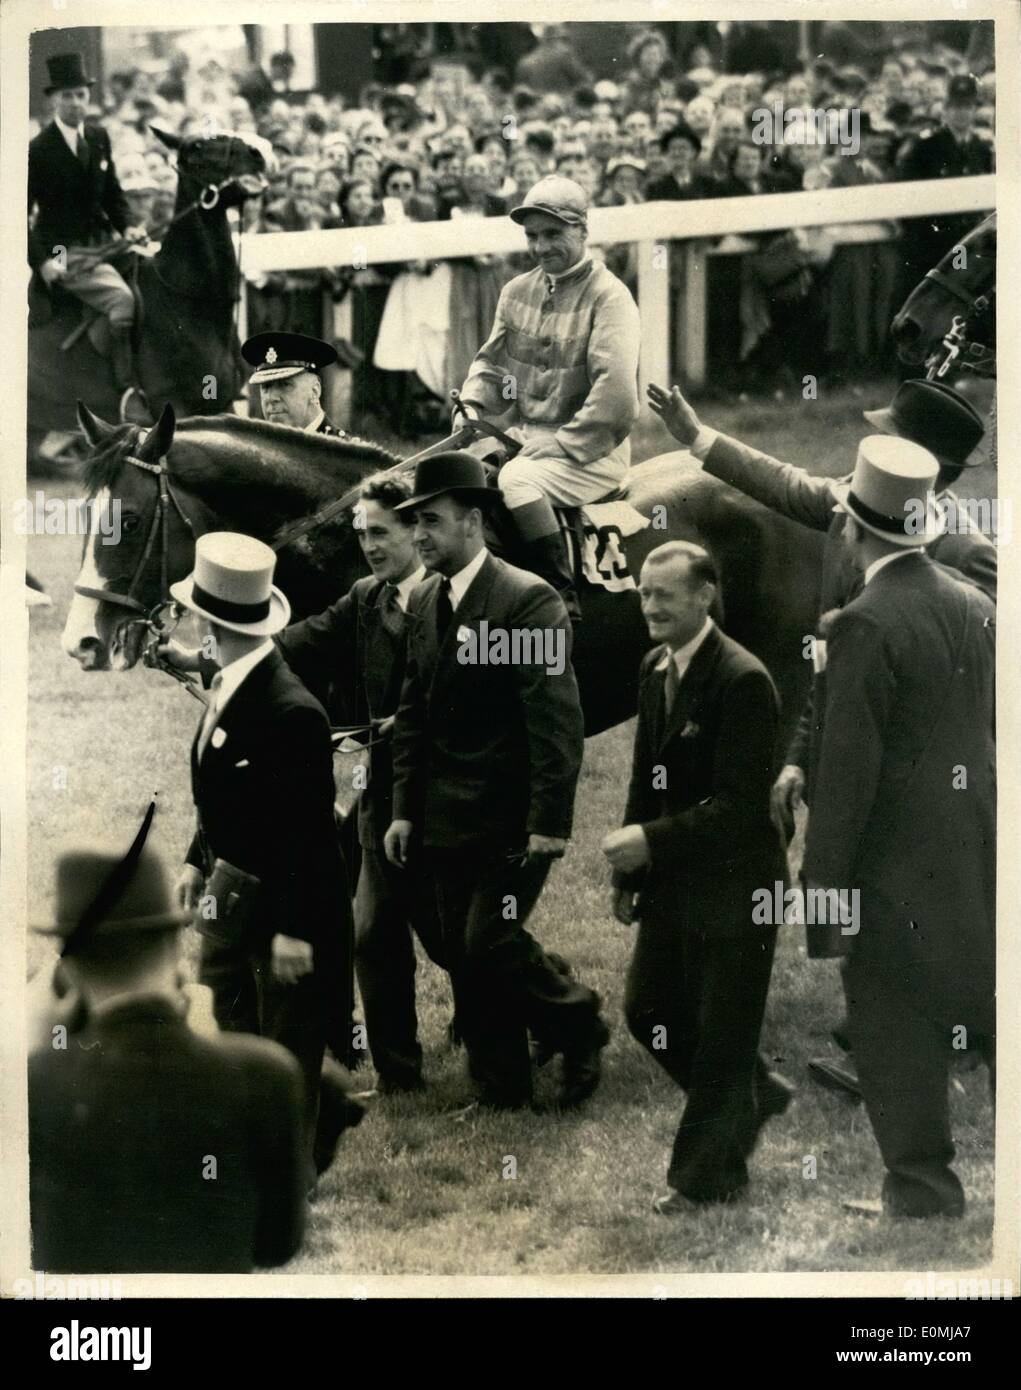 Giugno 06, 1955 - Gordon Richards vince il suo primo Derby, Regina del cavallo della seconda. Gordon Richards, il campione del fantino, oggi ha vinto il suo primo Derby, su Sir V. Sassoon la pinza . La regina del cavallo della aureola cavalcato da W.H. Carr, era secondo e Rosa Cavallo (Rae Johnstone) è terzo. Keystone Foto Mostra: Sir Victor Sassoon leader nel suo cavallo Pinza , Gordon Richards, fino dopo aver vinto il Derby di oggi. Keystone Foto Stock